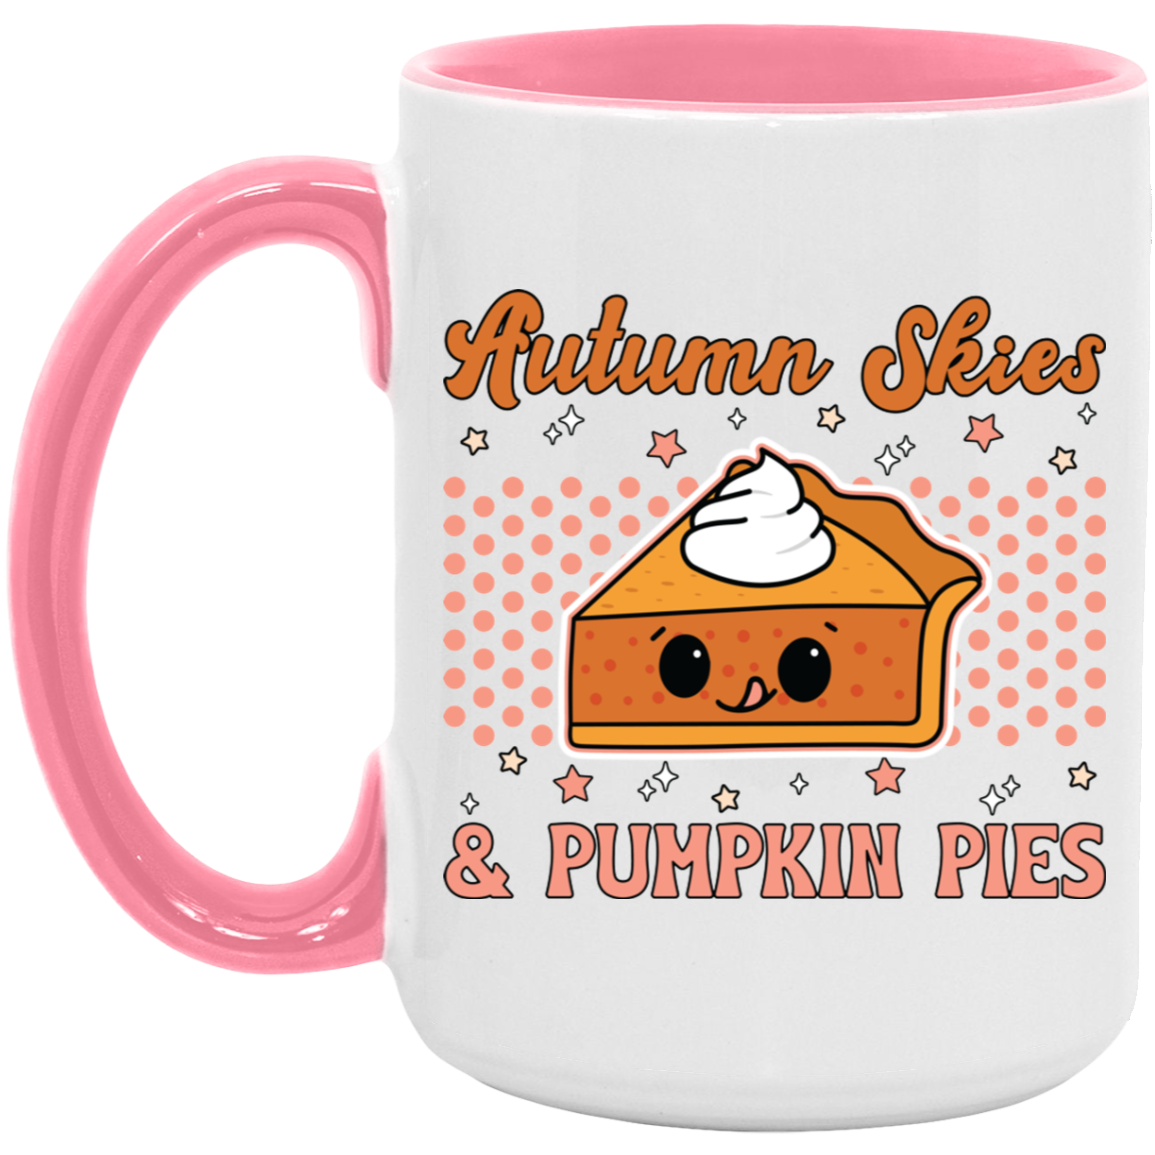 Autumn Skies & Pumpkin Pies Mug